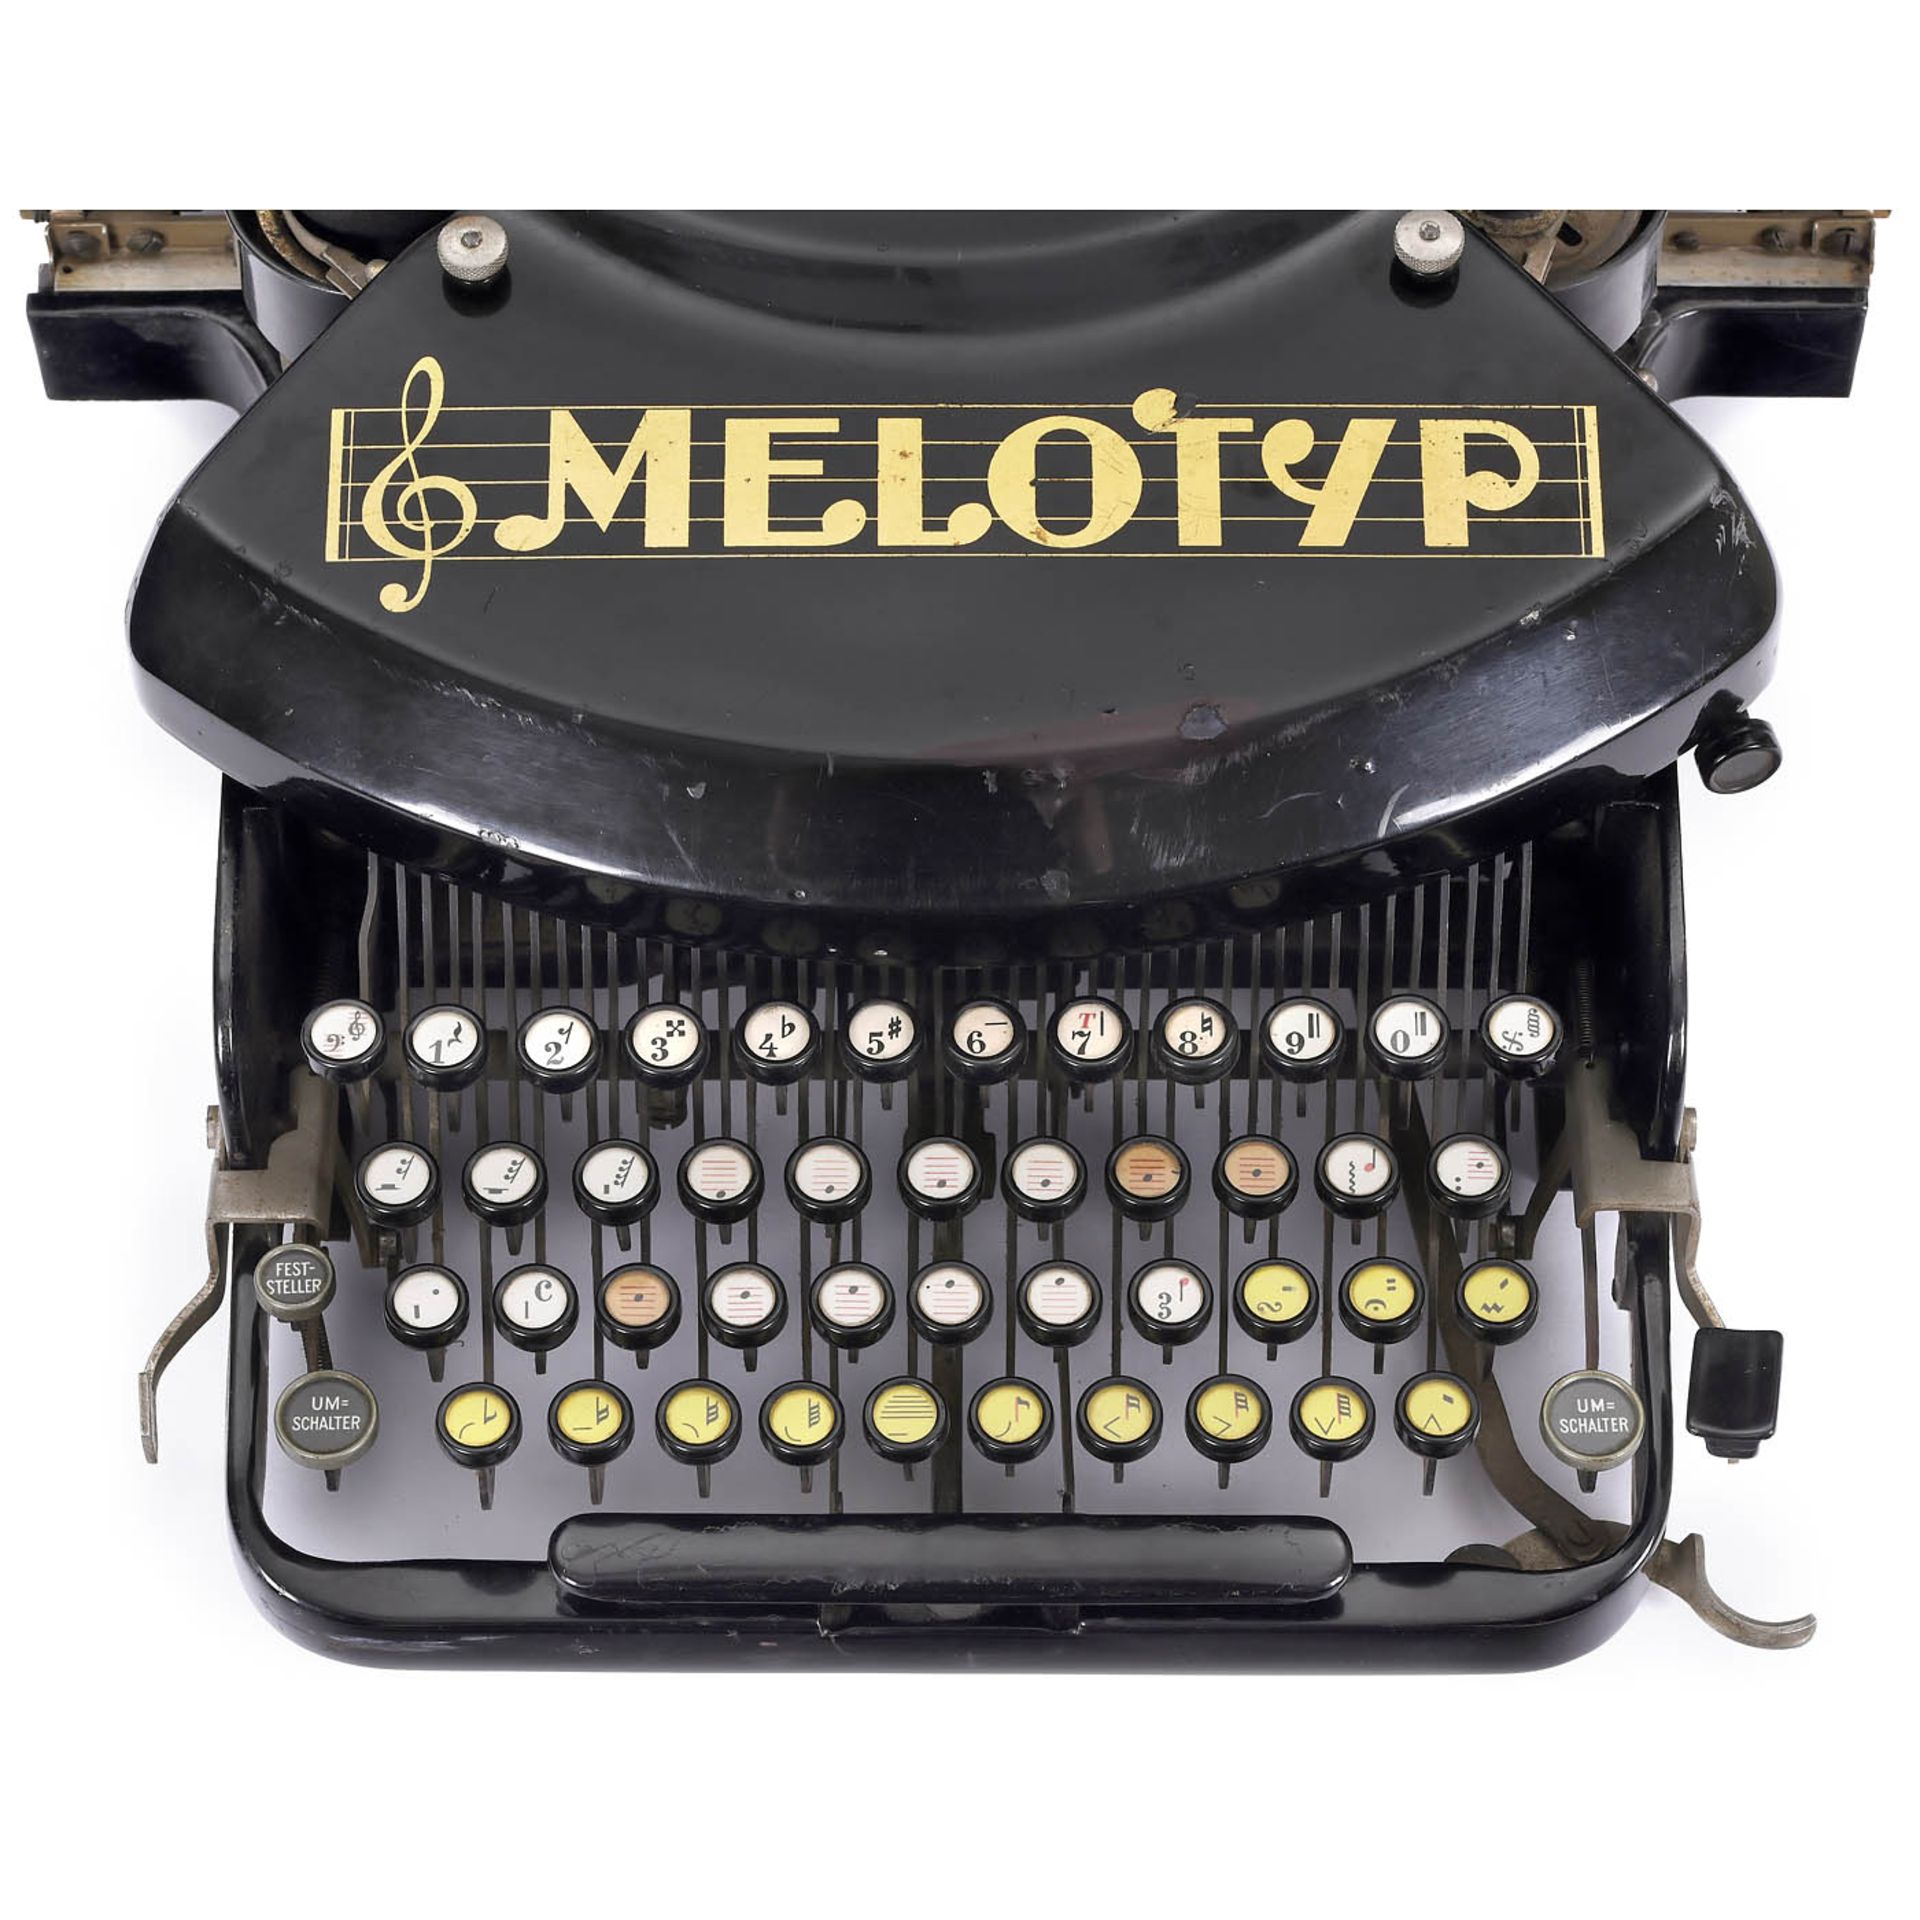 Melotyp Typewriter, c. 1937 - Bild 2 aus 3